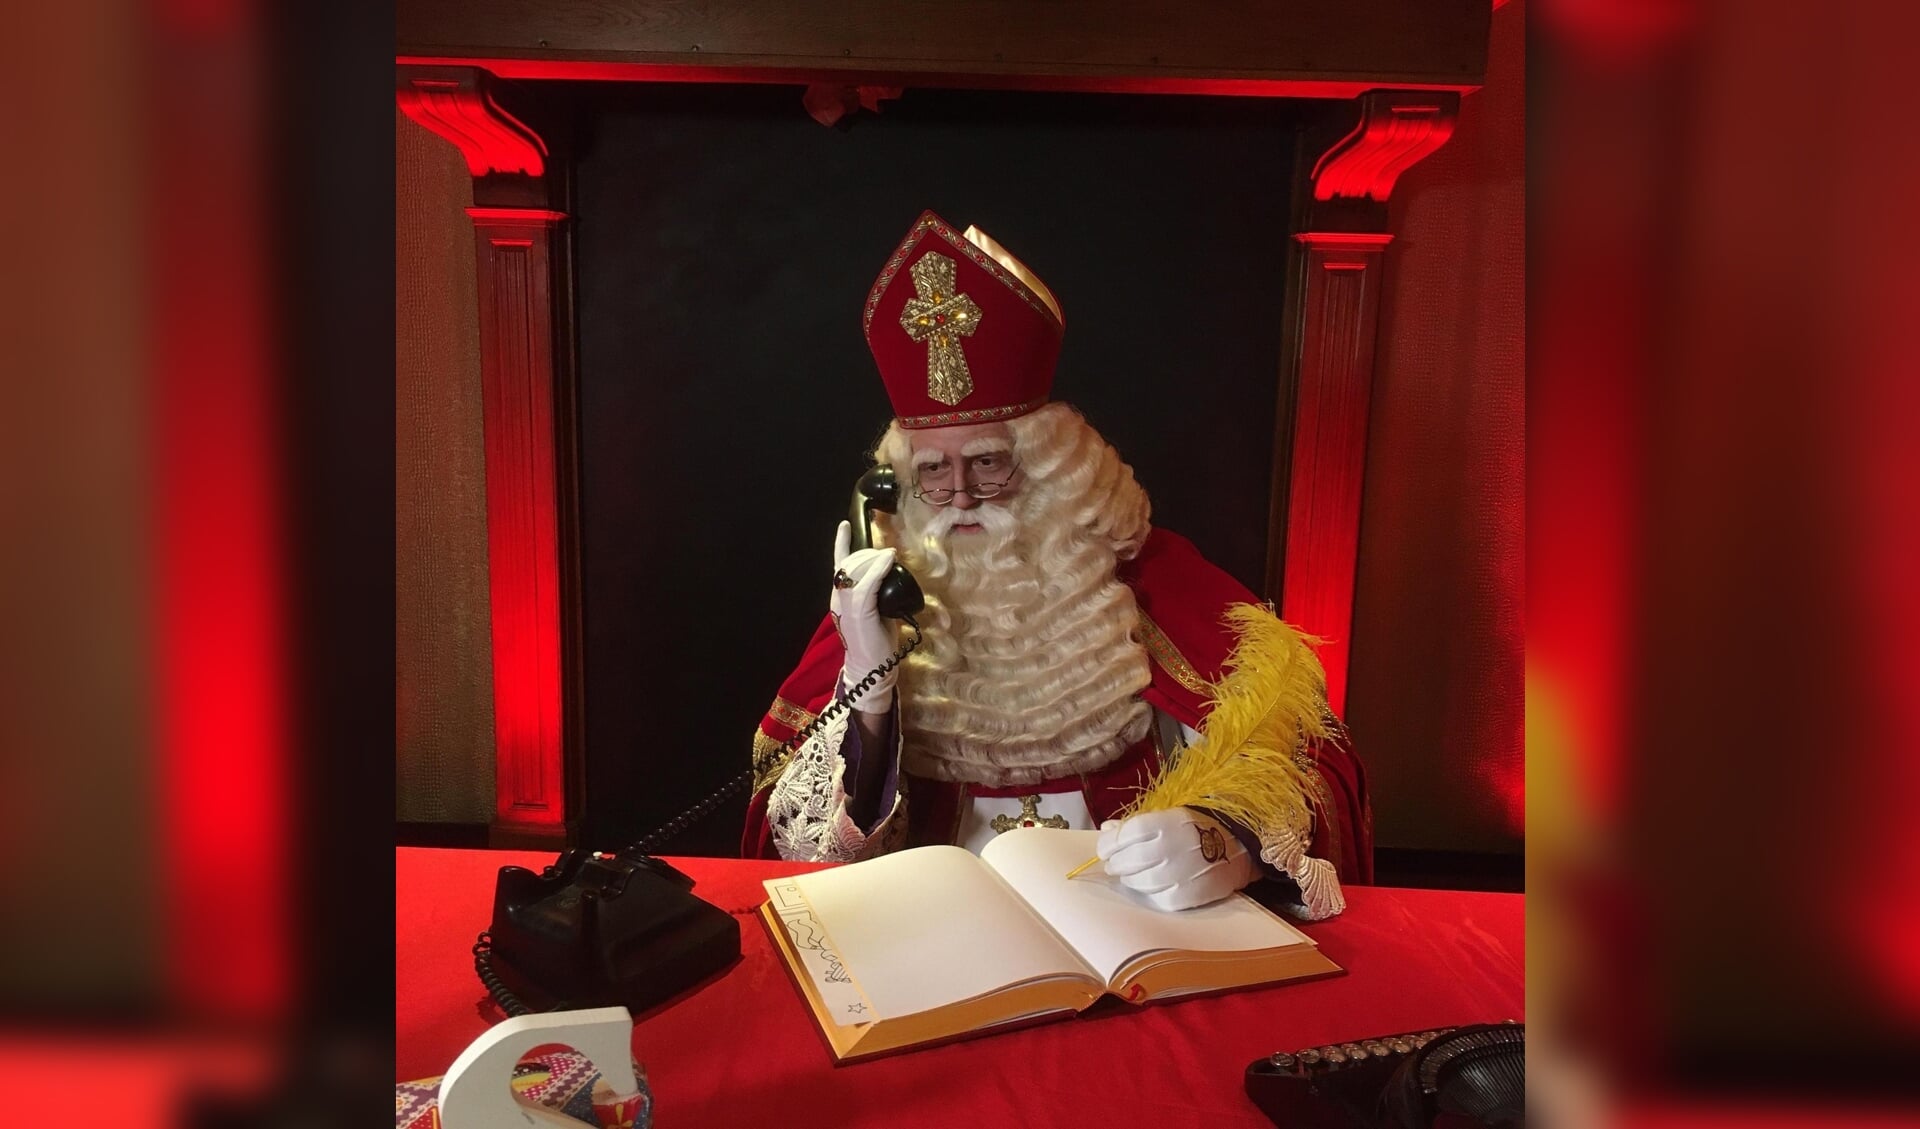 Sinterklaas loste het probleem van de verdwenen verlanglijstjes op door de burgemeester te bellen